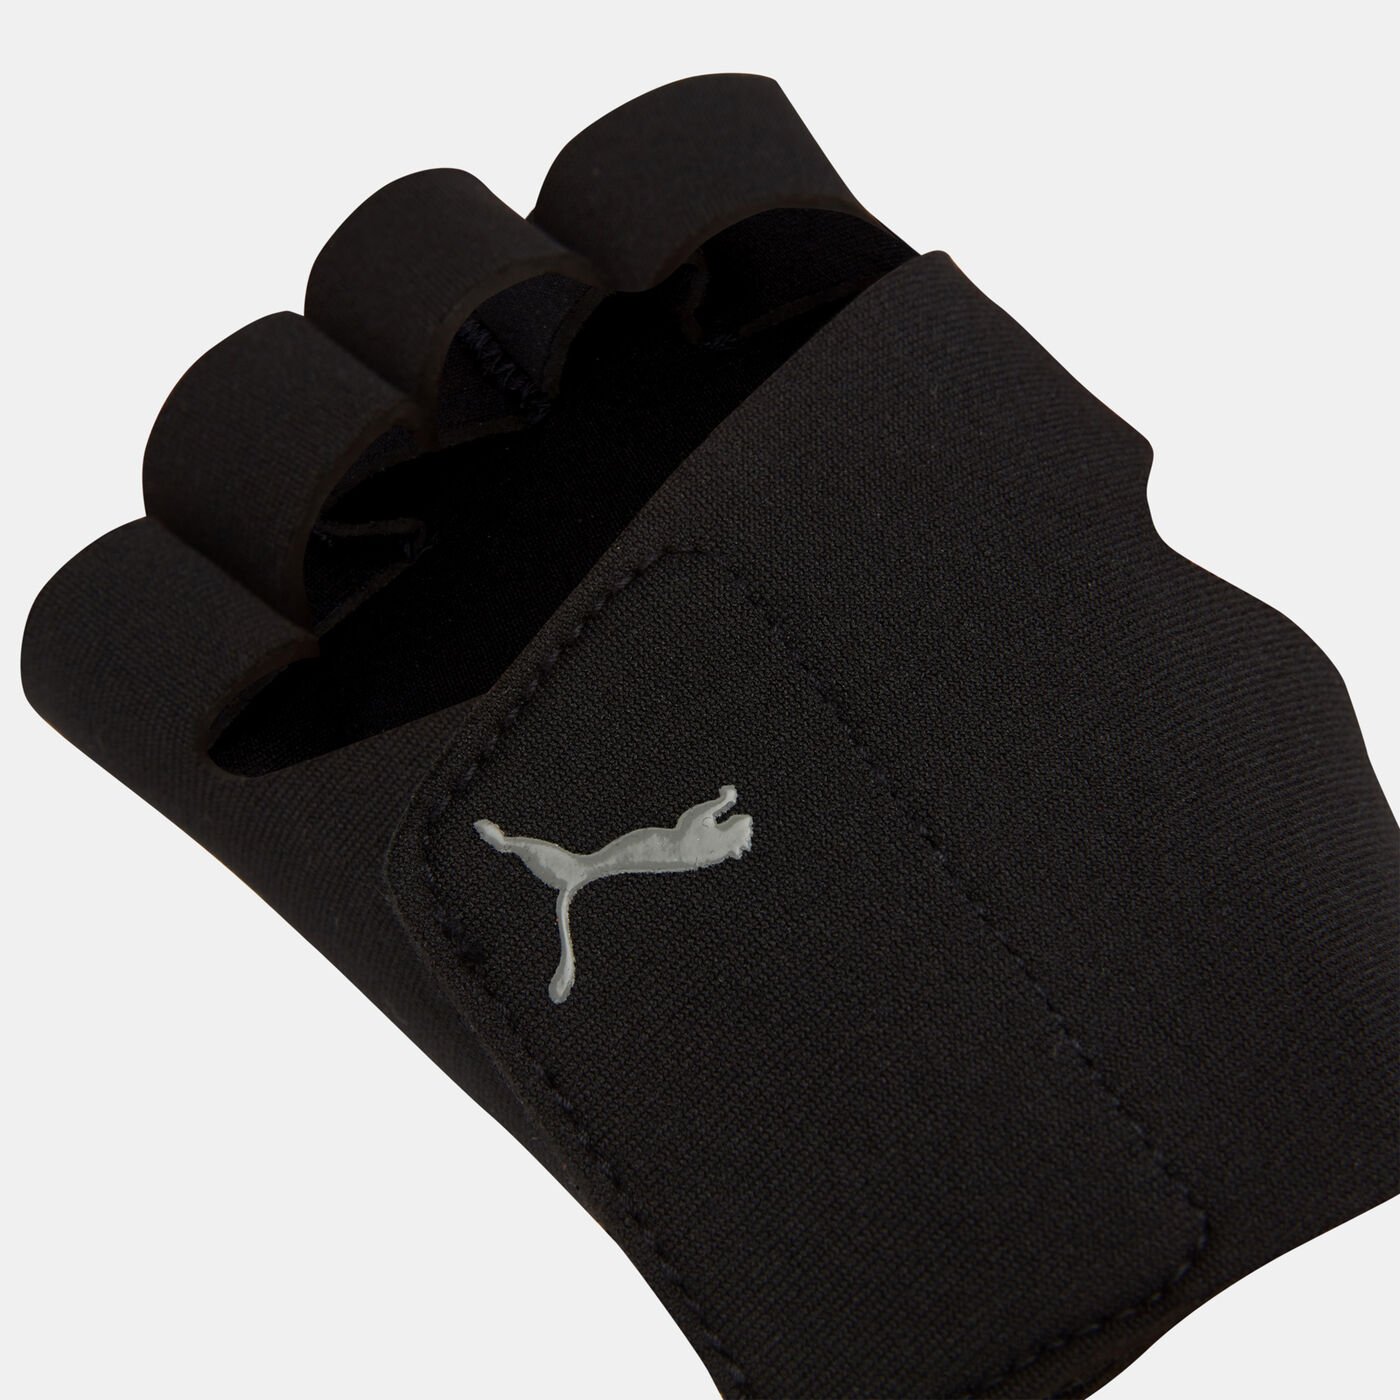 Men's Essential Premium Training Gloves